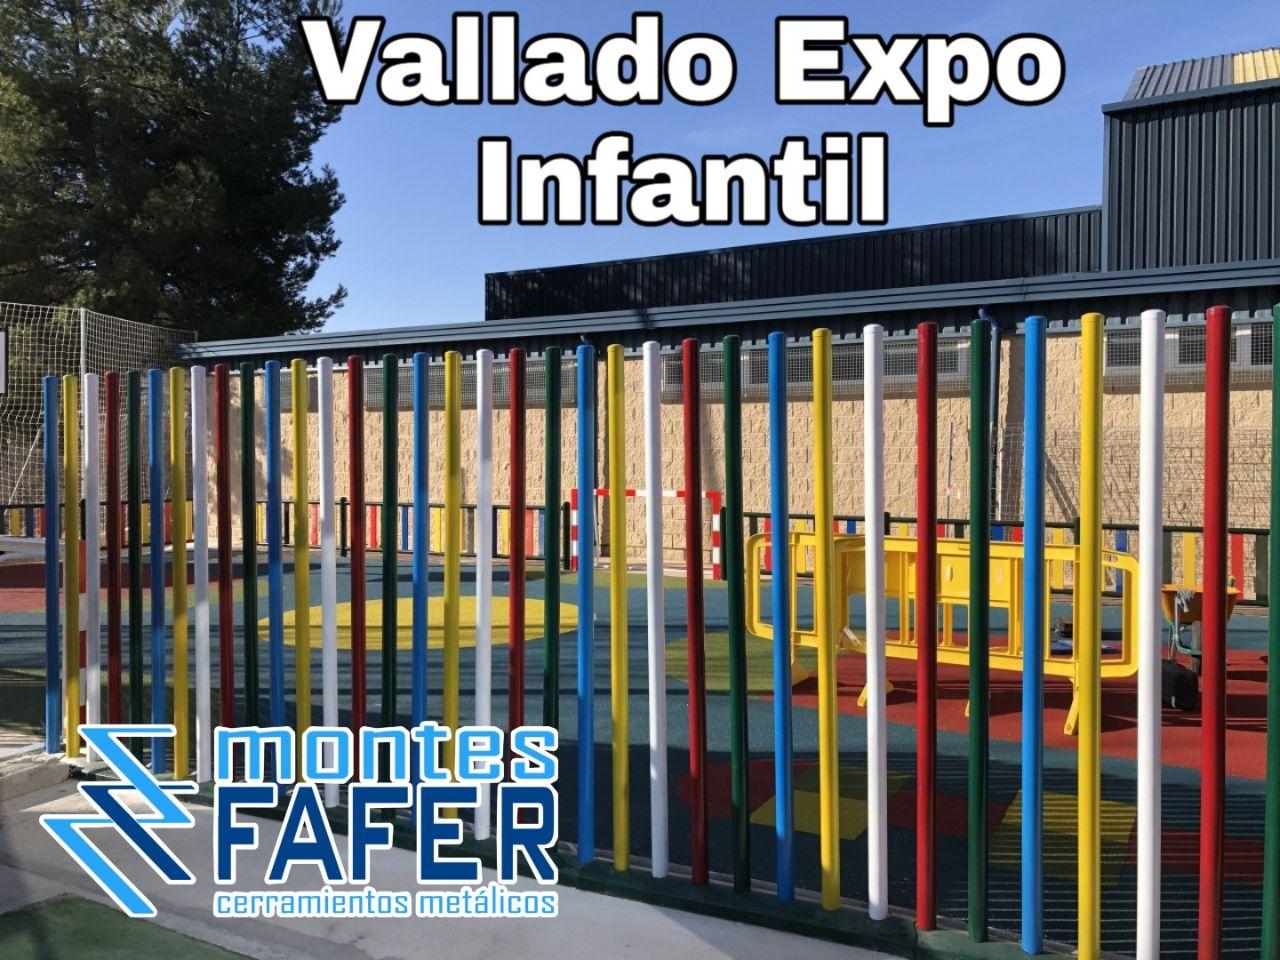 Vallado multicolor expo infantil MontesFafer